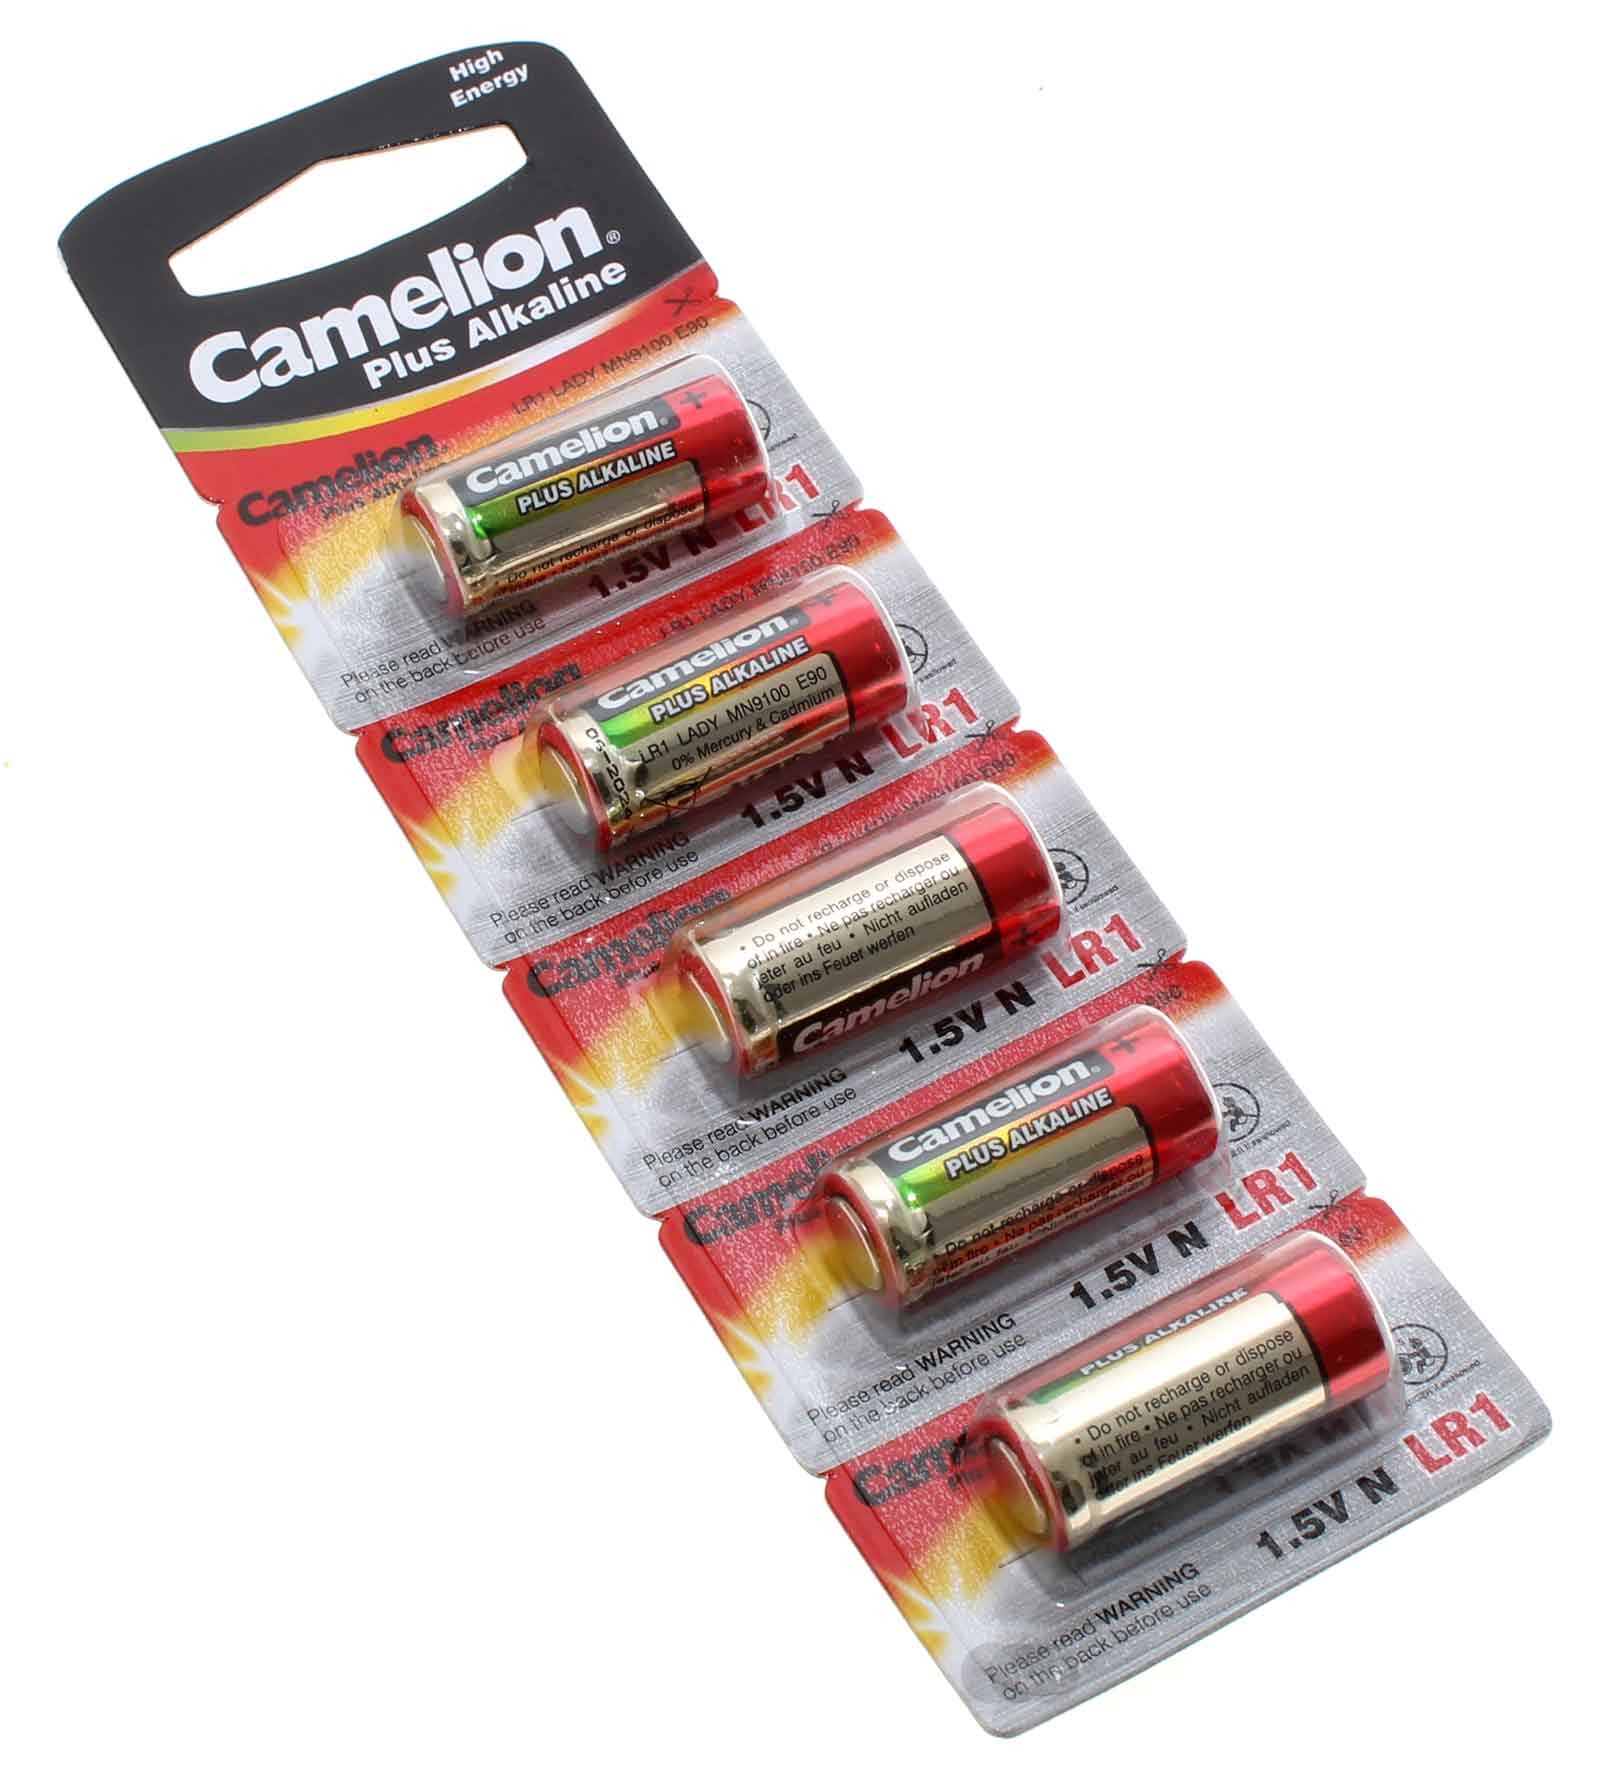 5er-Pack Camelion Plus Alkaline Batterie, Typ LR1, Lady, N mit 1,5 Volt und 945mAh Kapazität